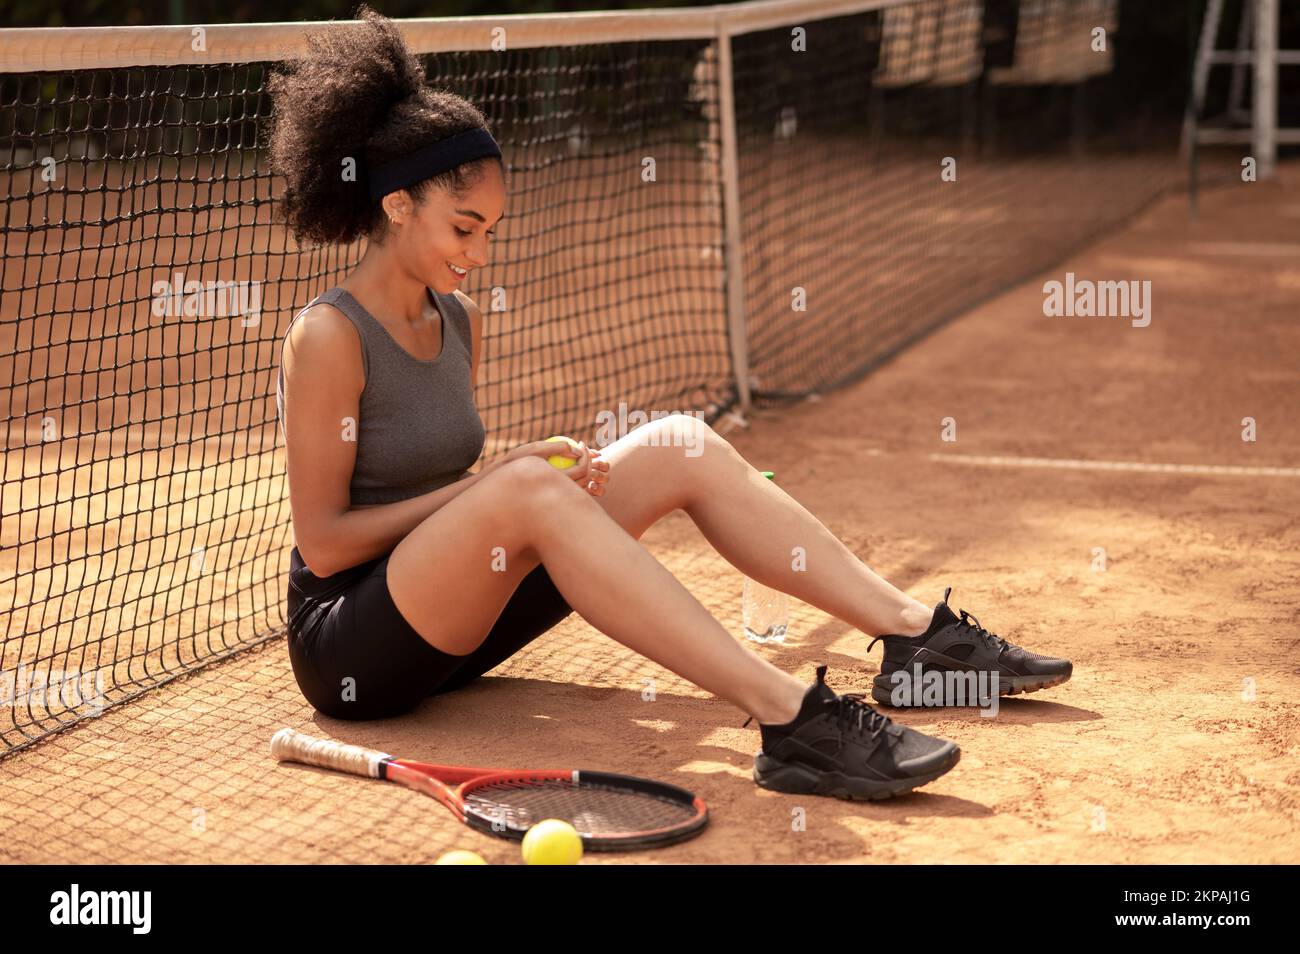 Süßes dunkelhaariges Mädchen, das auf dem Tennisplatz sitzt und zufrieden aussieht Stockfoto